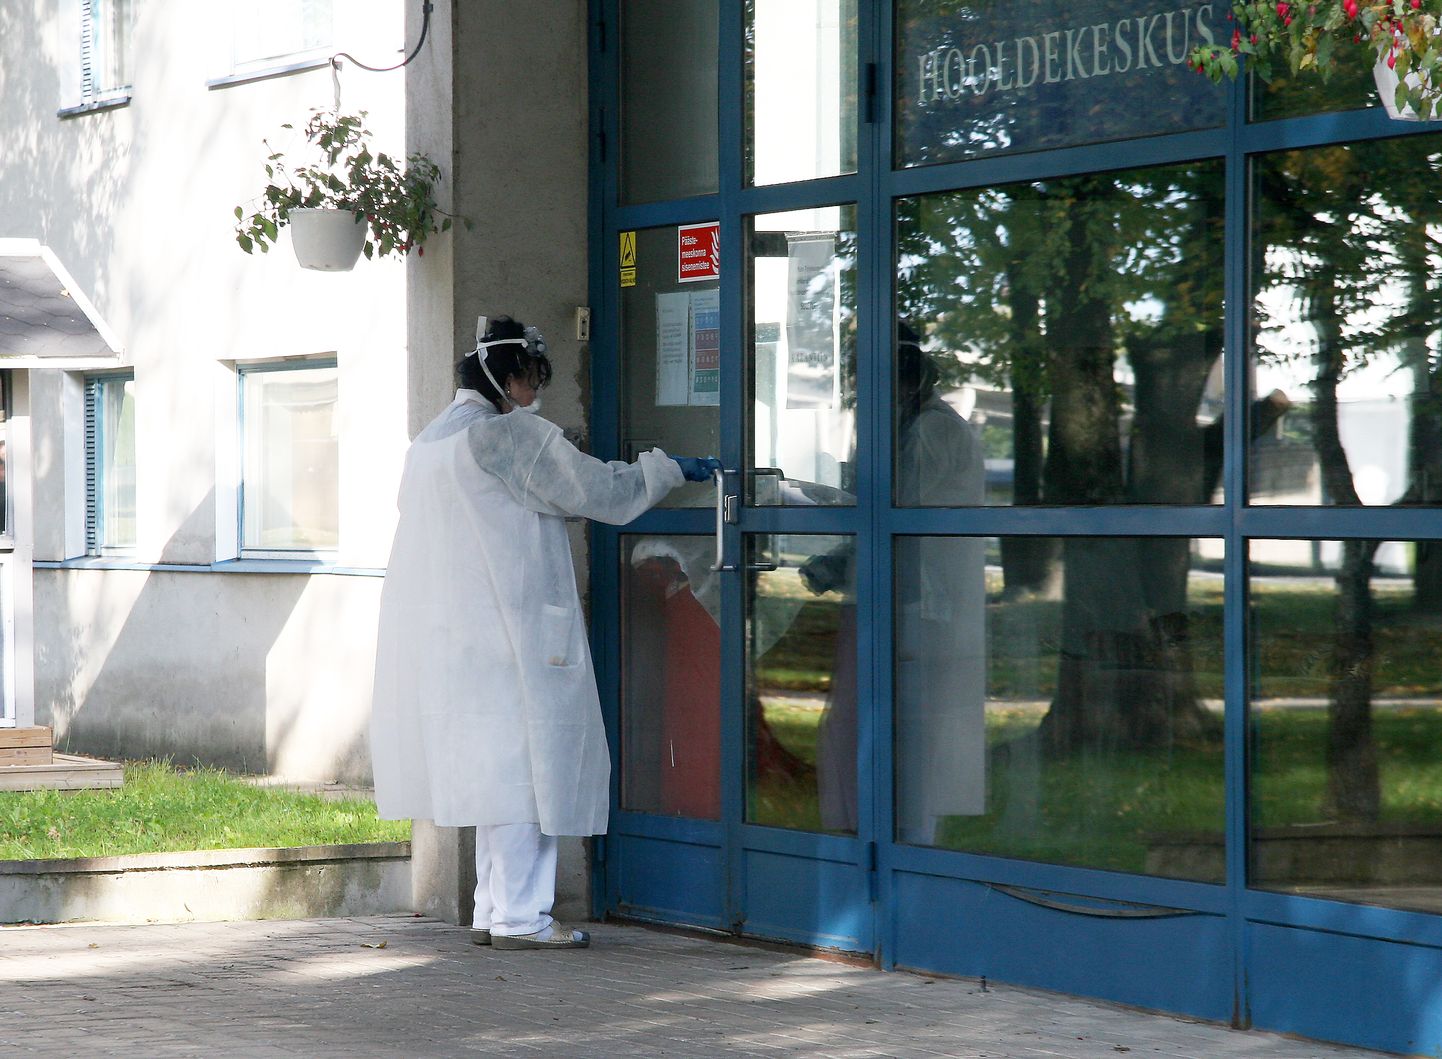 В попечительском доме, находящемся в центре города Йыхви, заразились коронавирусом 16 человек.